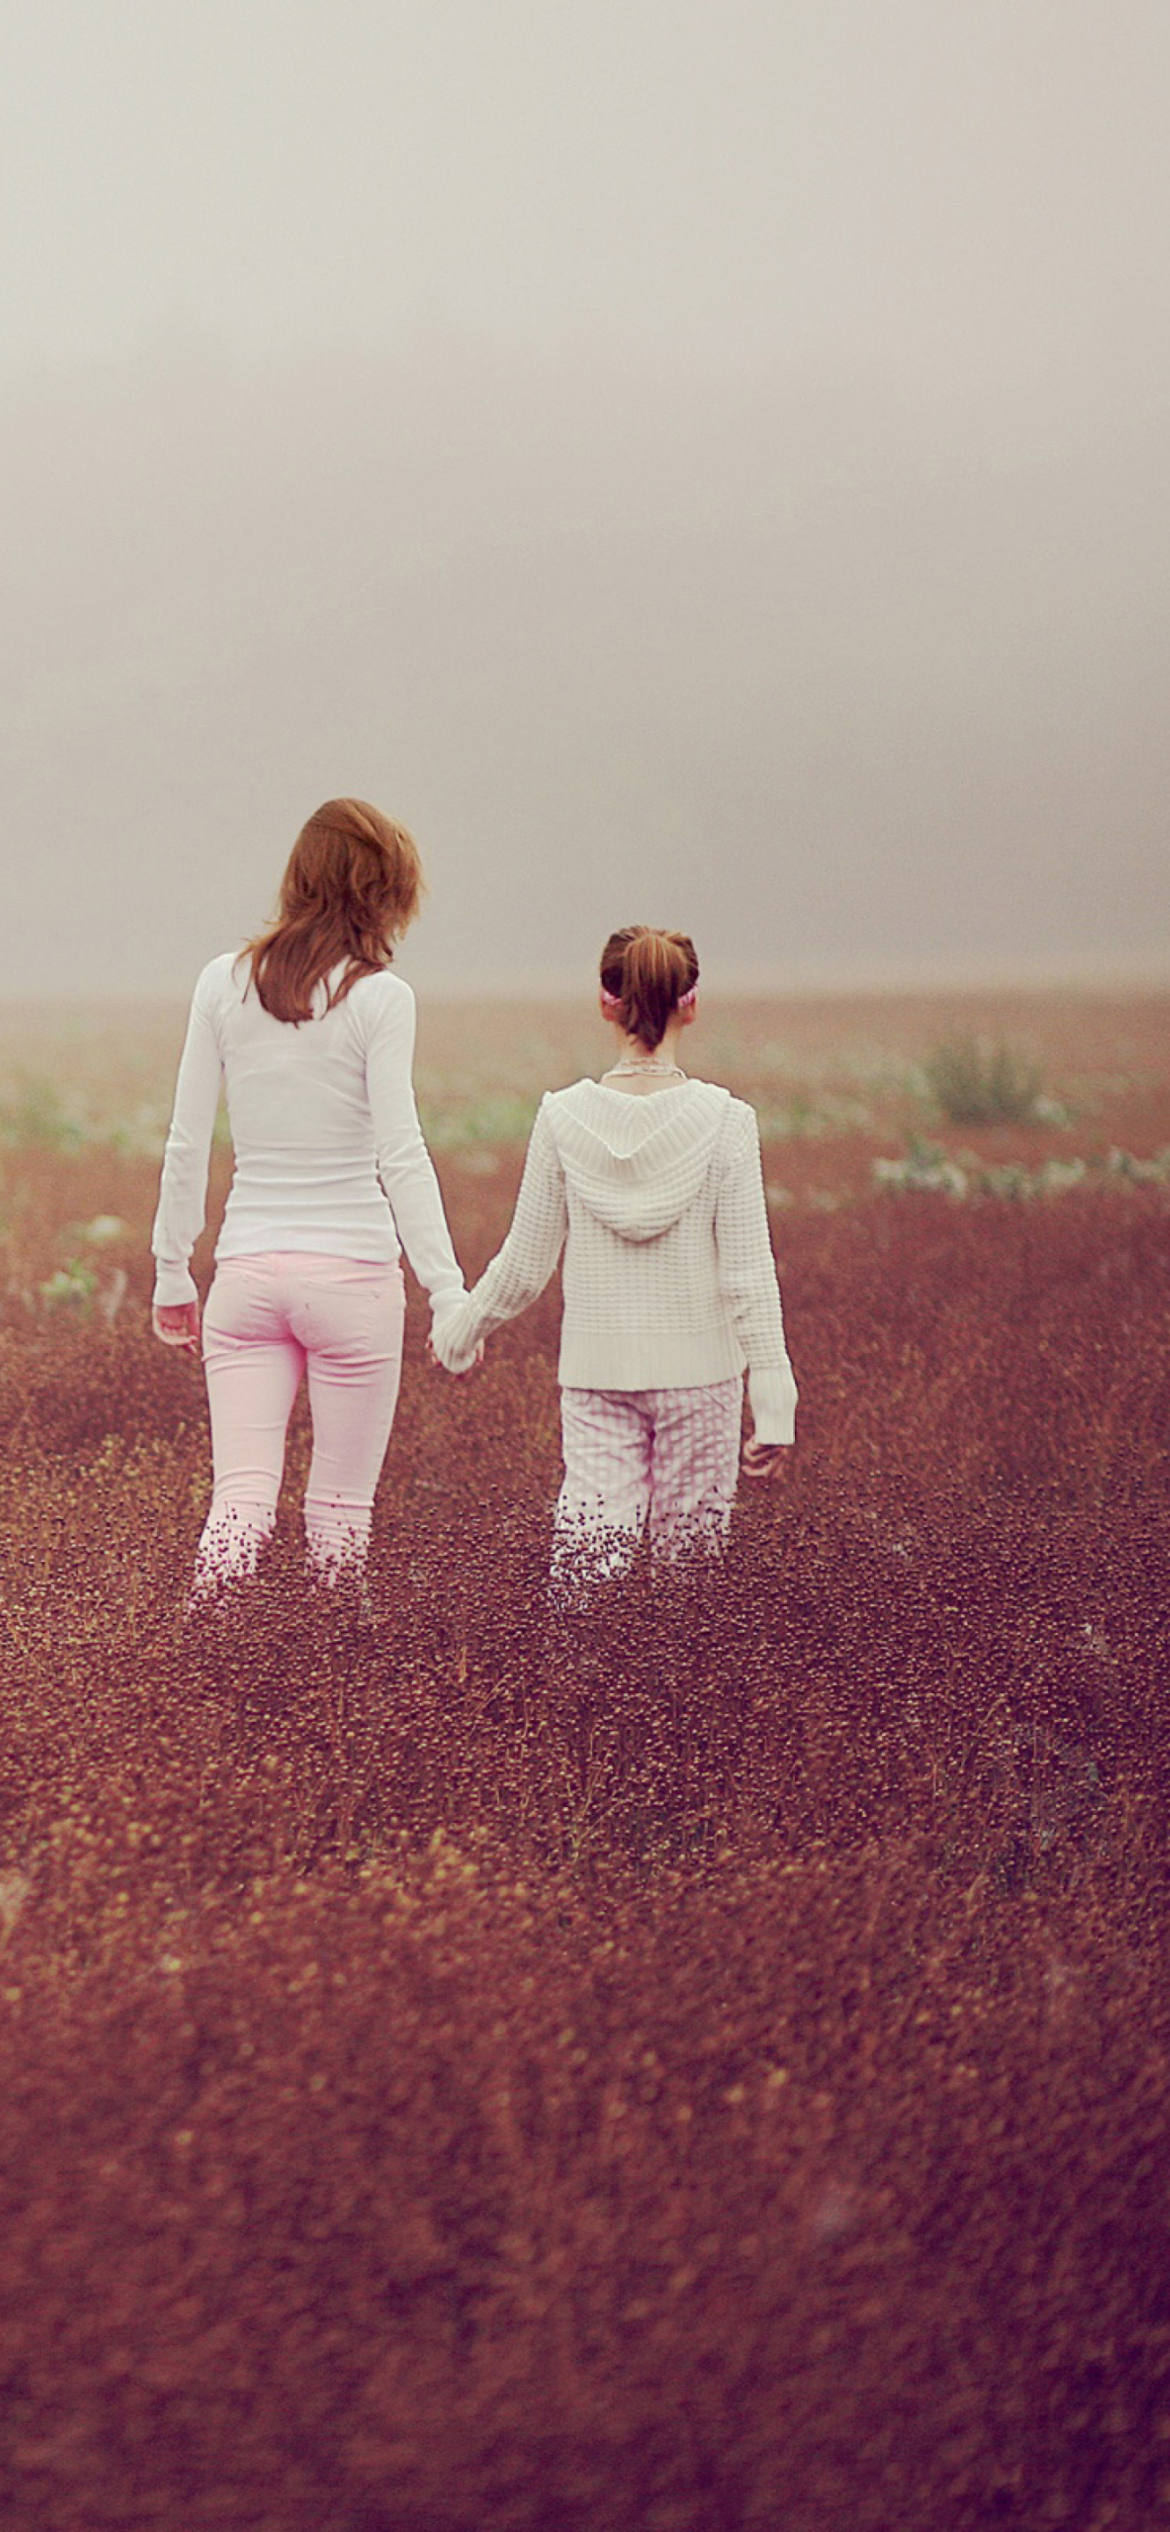 Das Two Girls Walking In The Field Wallpaper 1170x2532